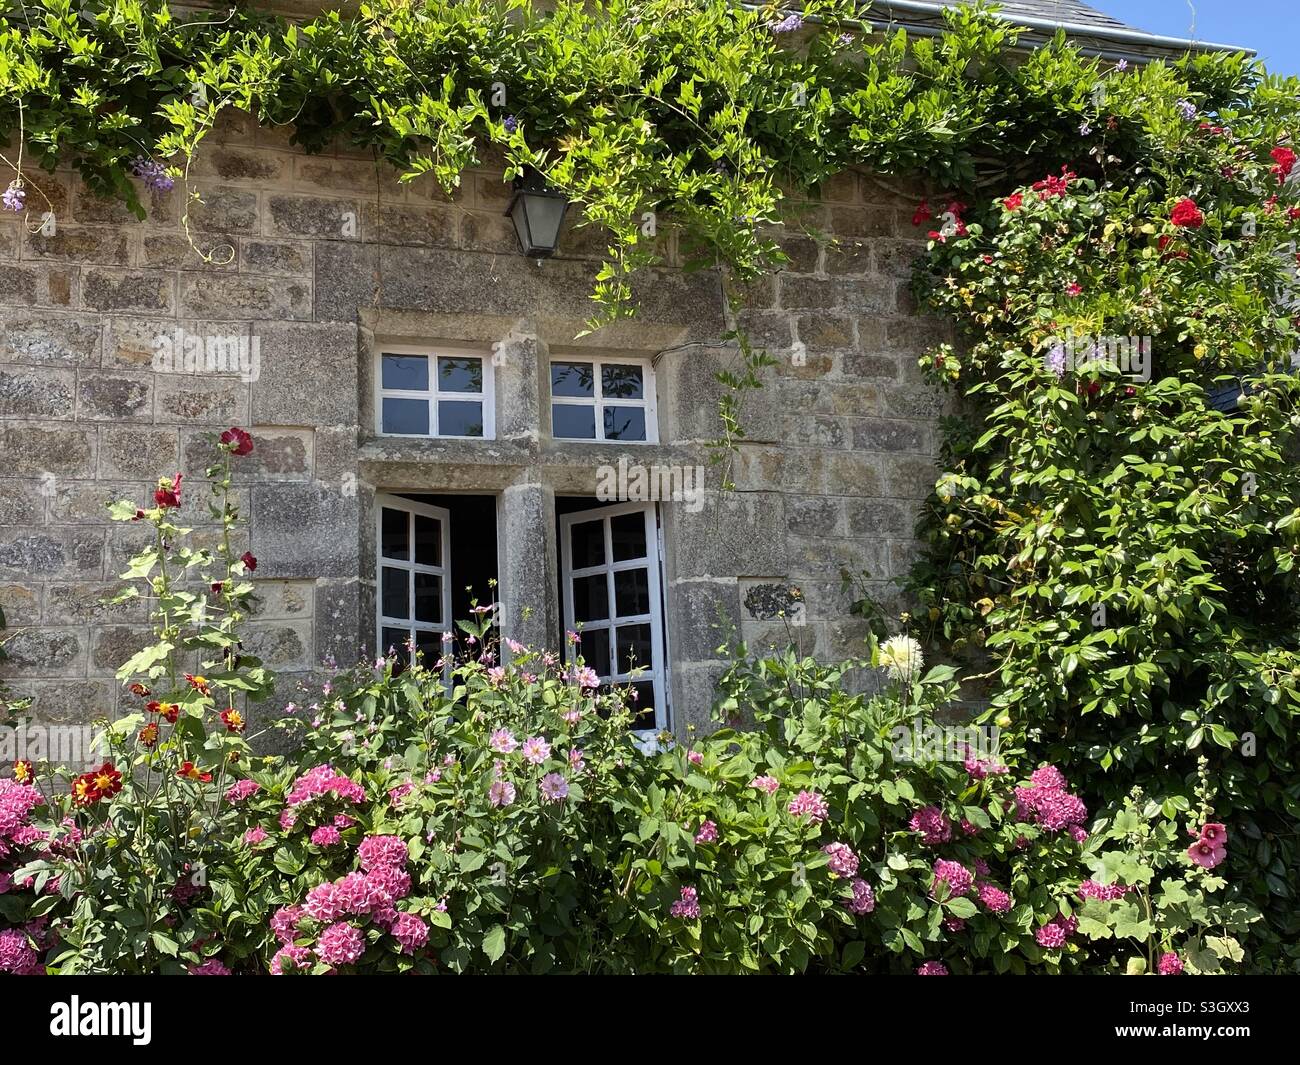 fenêtre dans une maison typique de bretagne avec des fleurs Banque D'Images